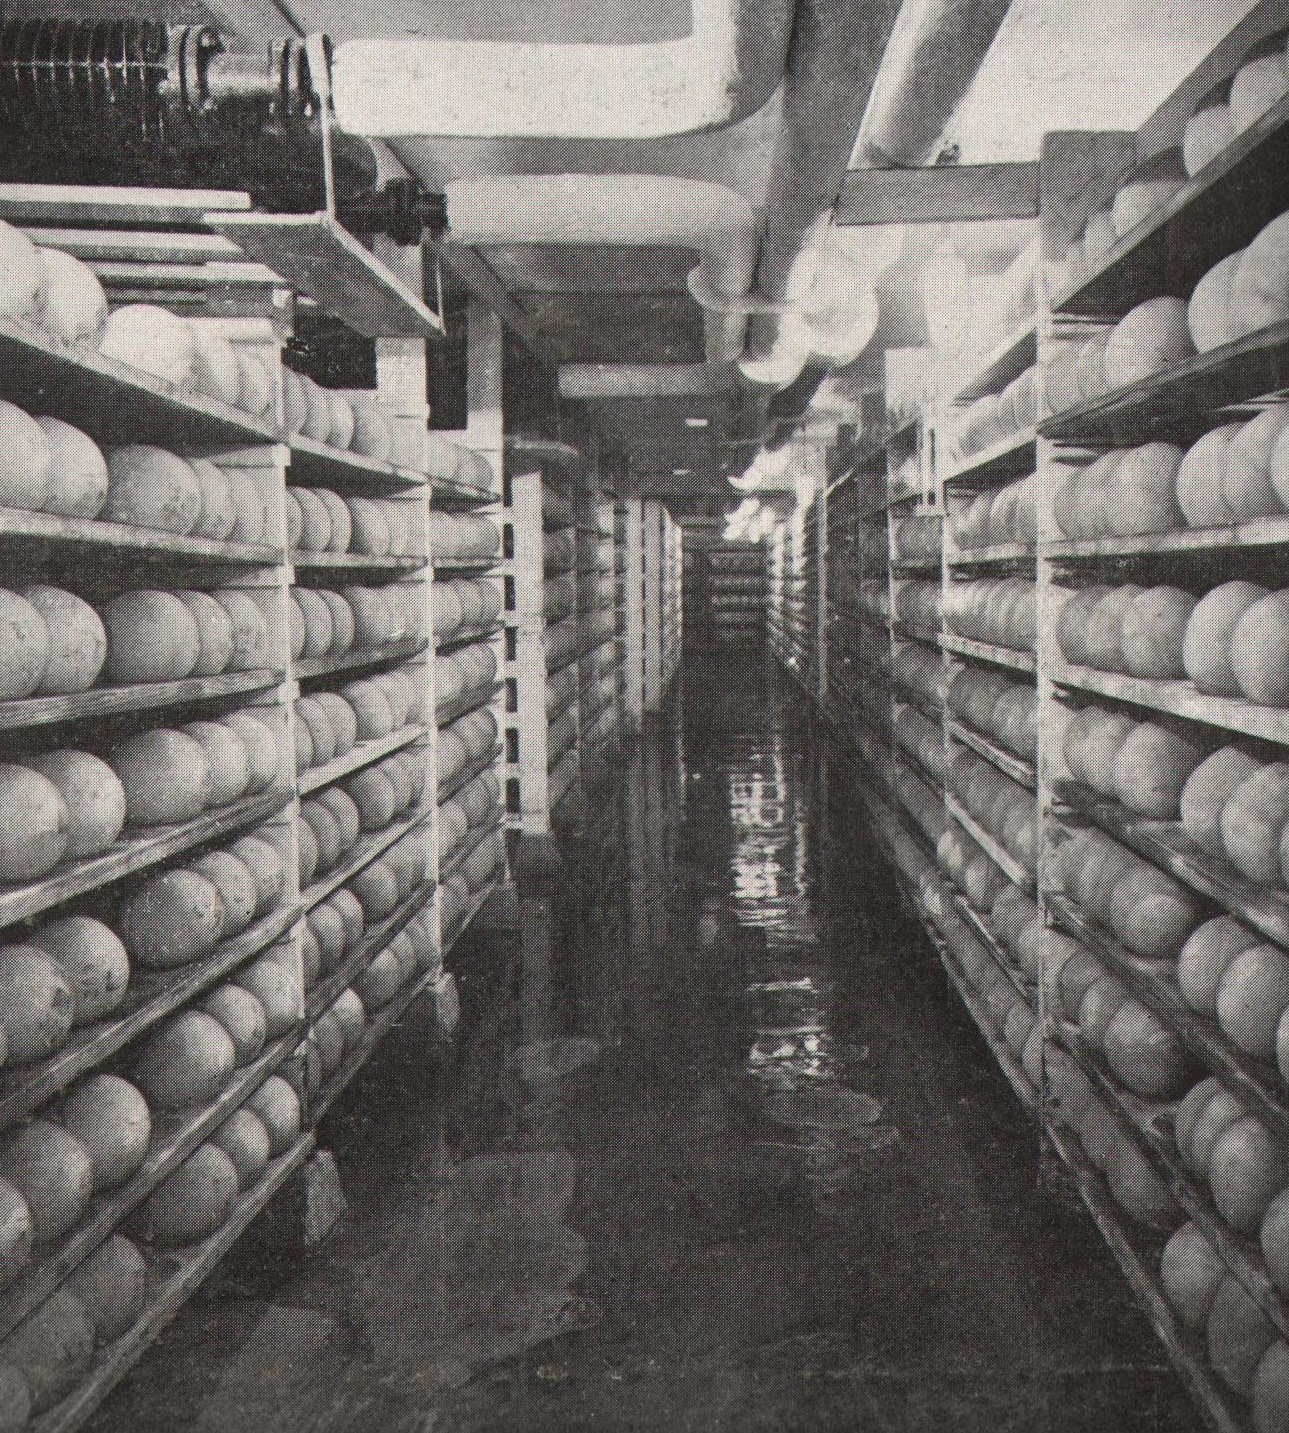 Edami (Hollandi kera) juustu laagerdus ladu